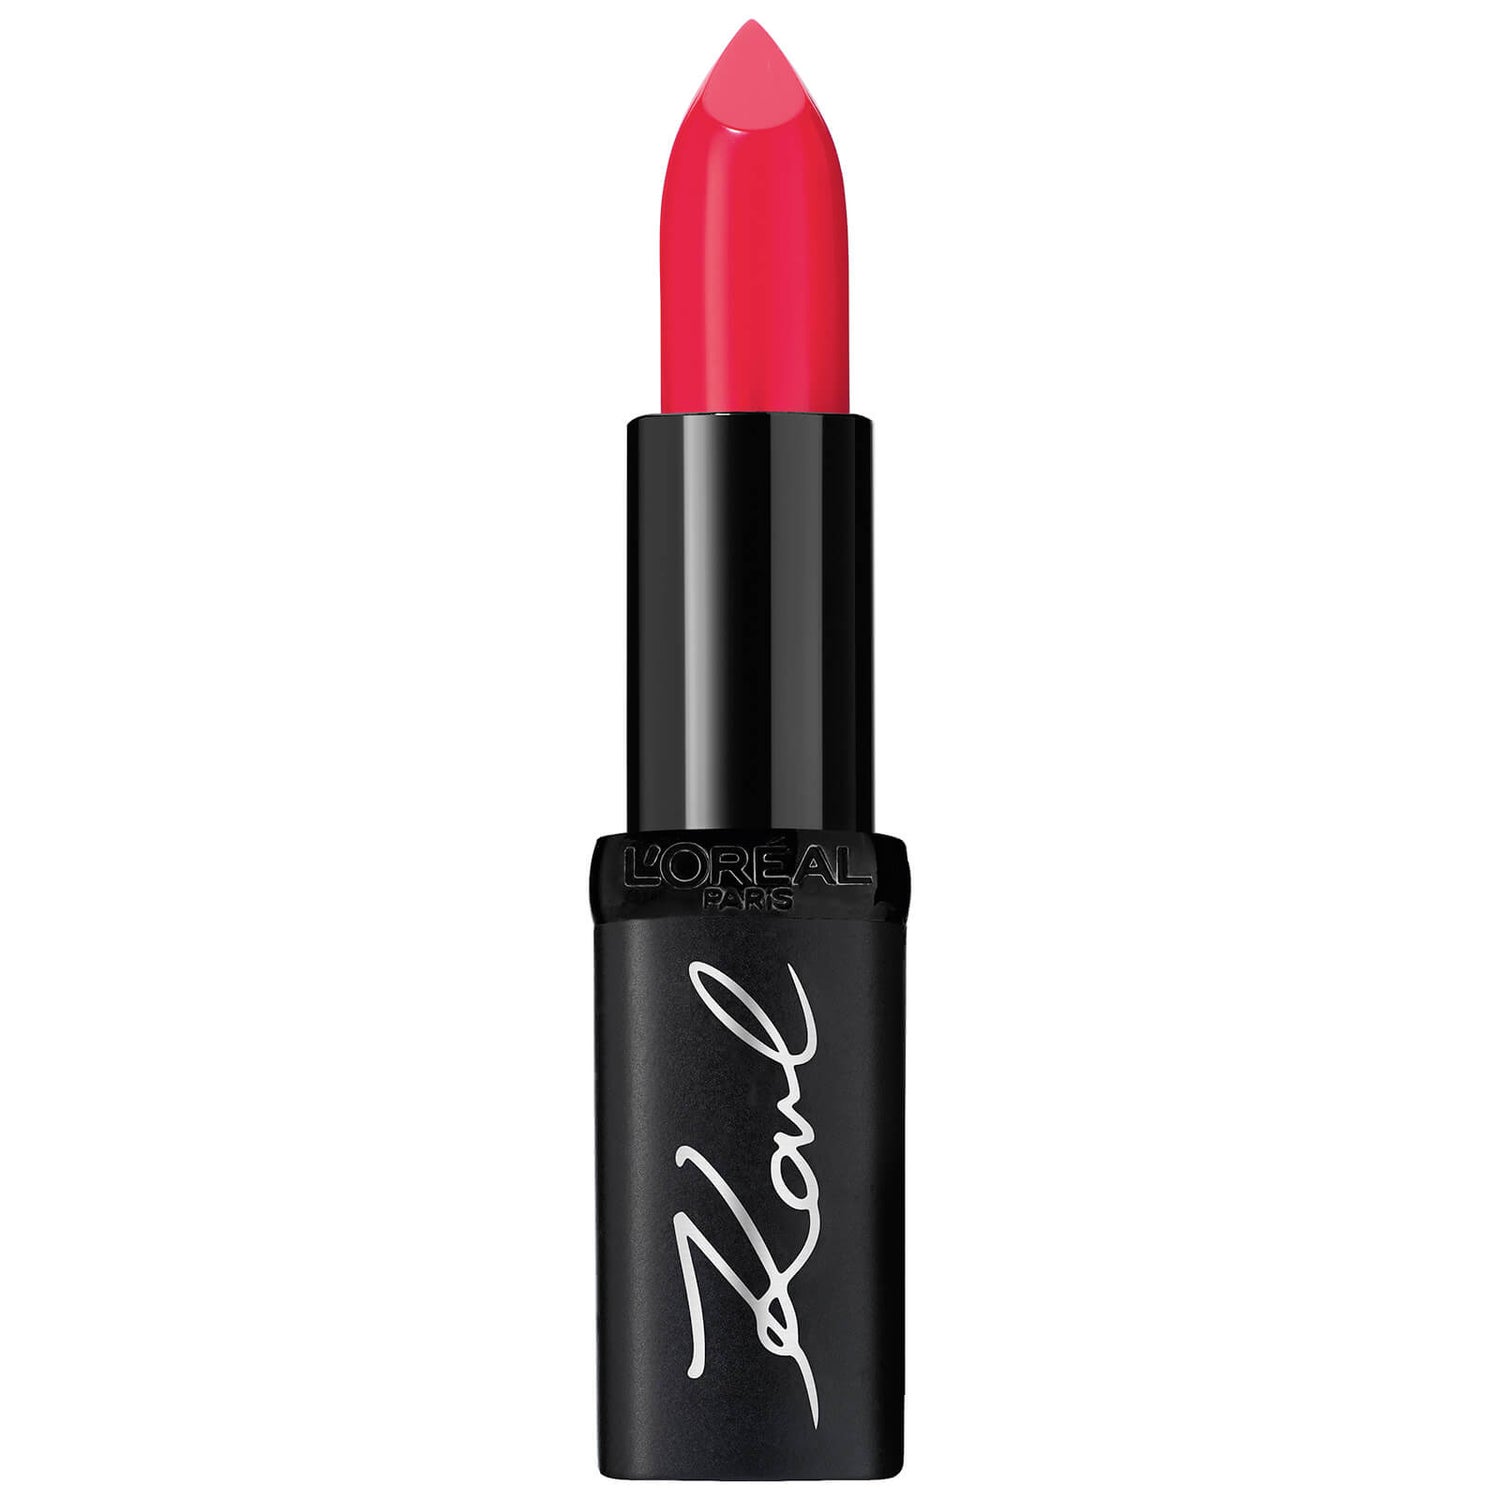 Karl Lagerfeld X L'Oréal Paris Colour Riche Lipstick - Karismatic